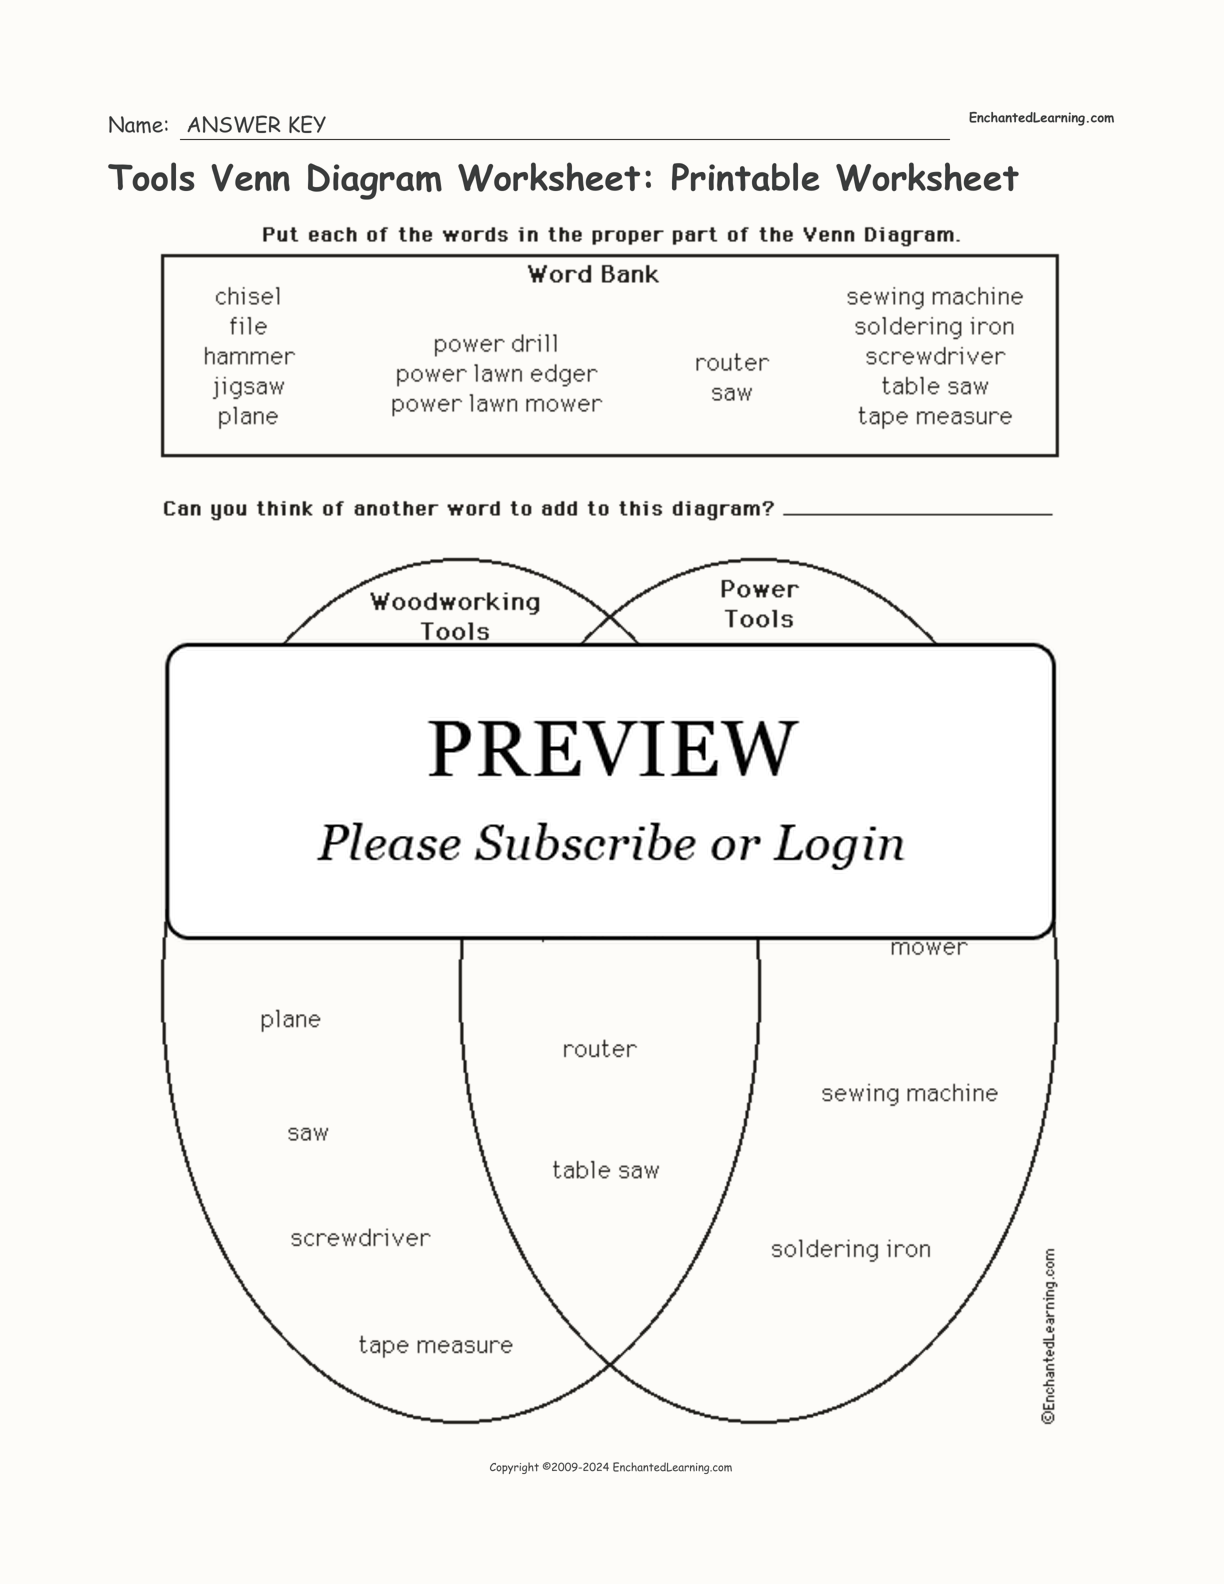 Tools Venn Diagram Worksheet: Printable Worksheet interactive worksheet page 2